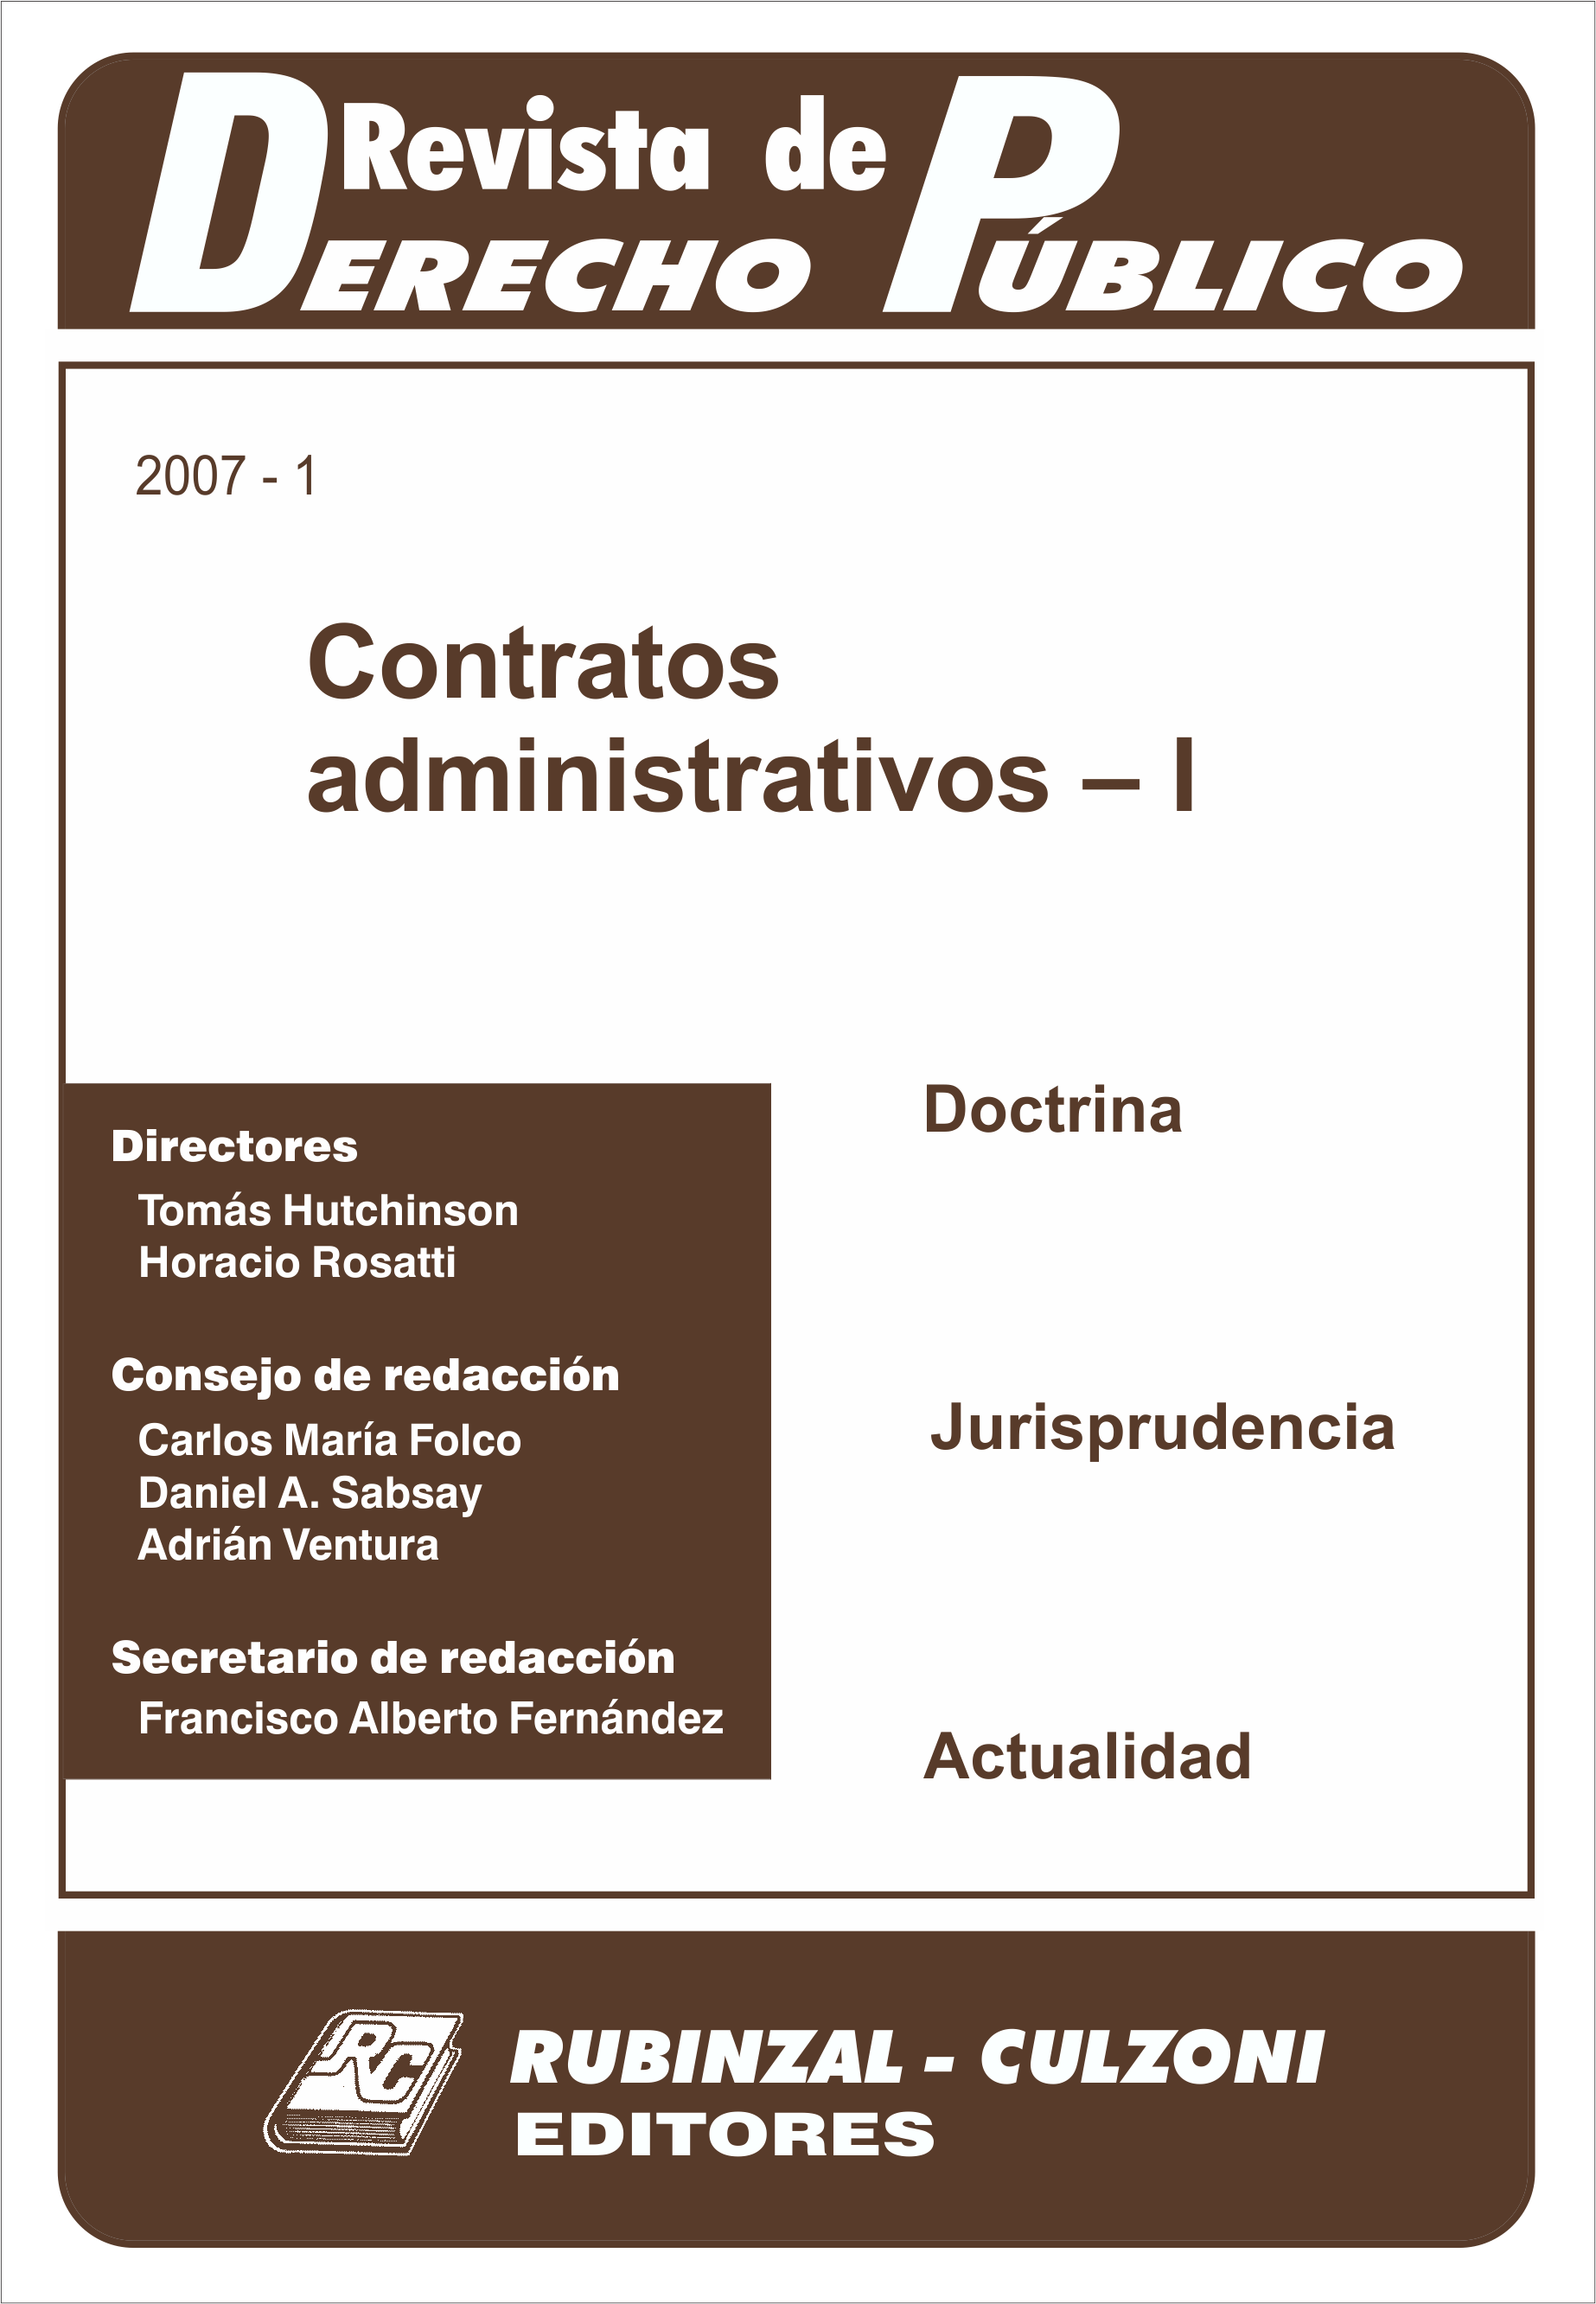 Contratos administrativos - I. [2007-1]